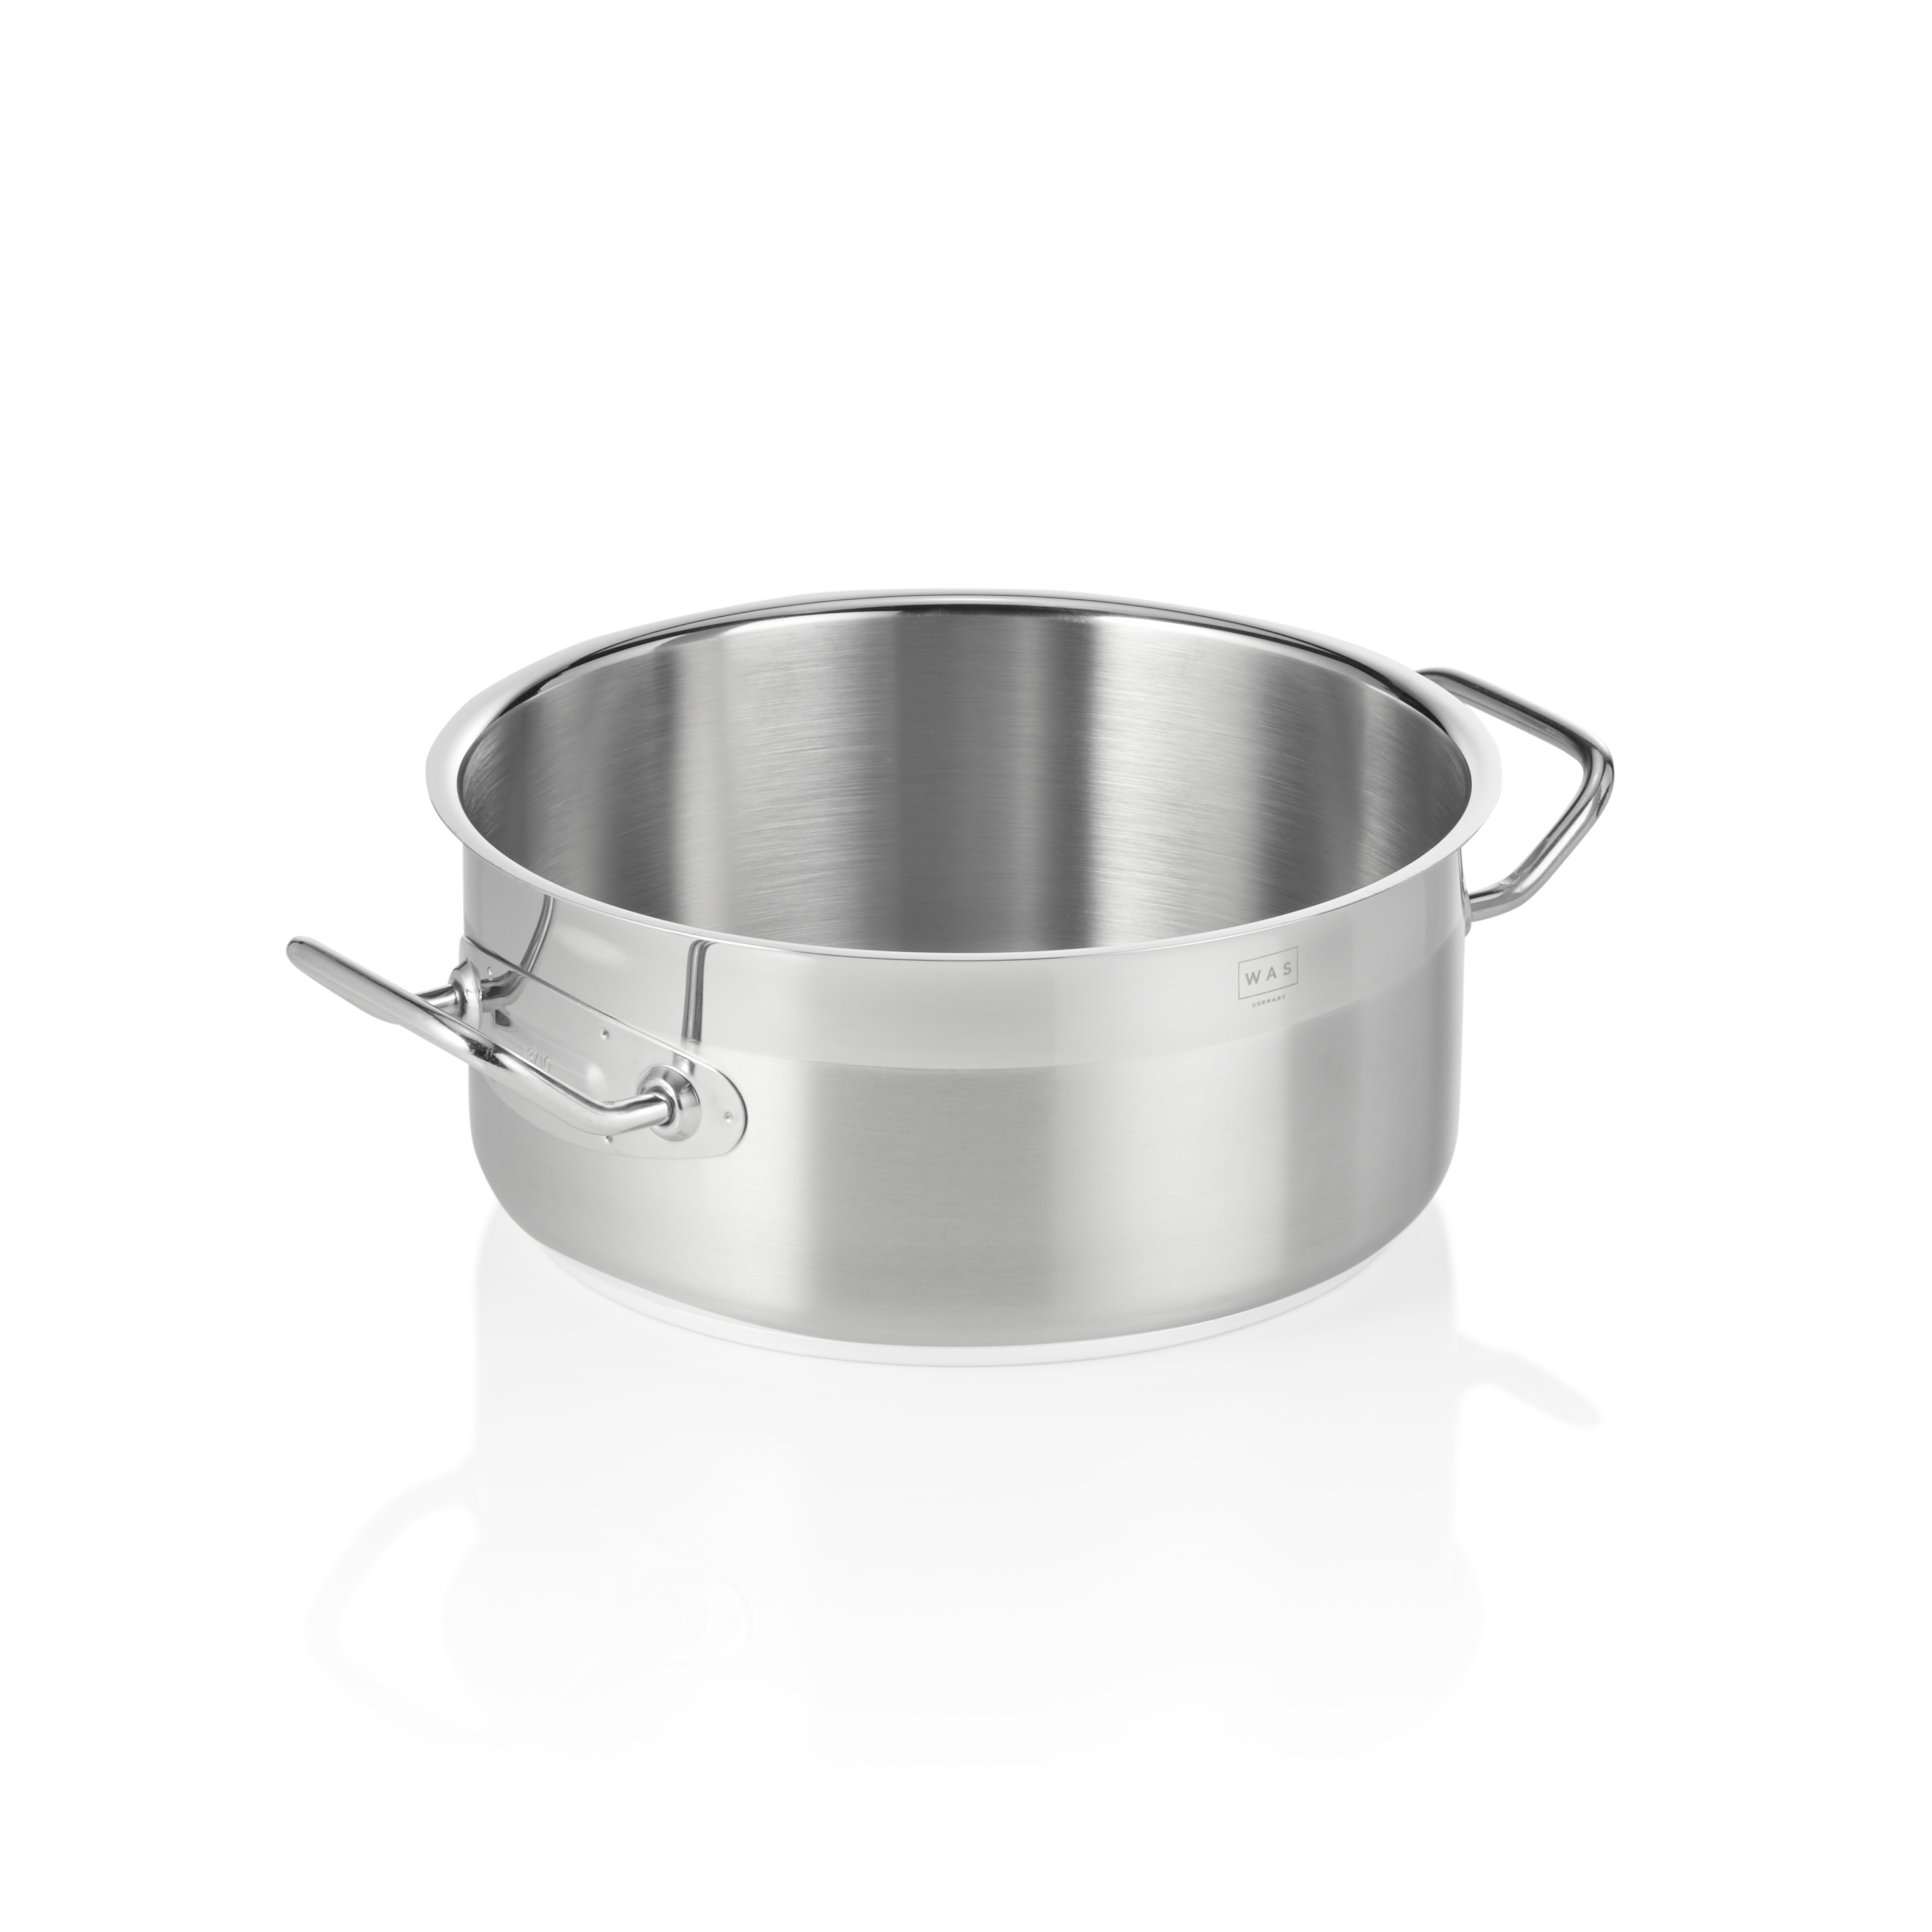 Bratentopf Cookware 21, Ø 24 cm, 4,5 Liter - Höhe 11,0 cm - Edelstahl 18/10